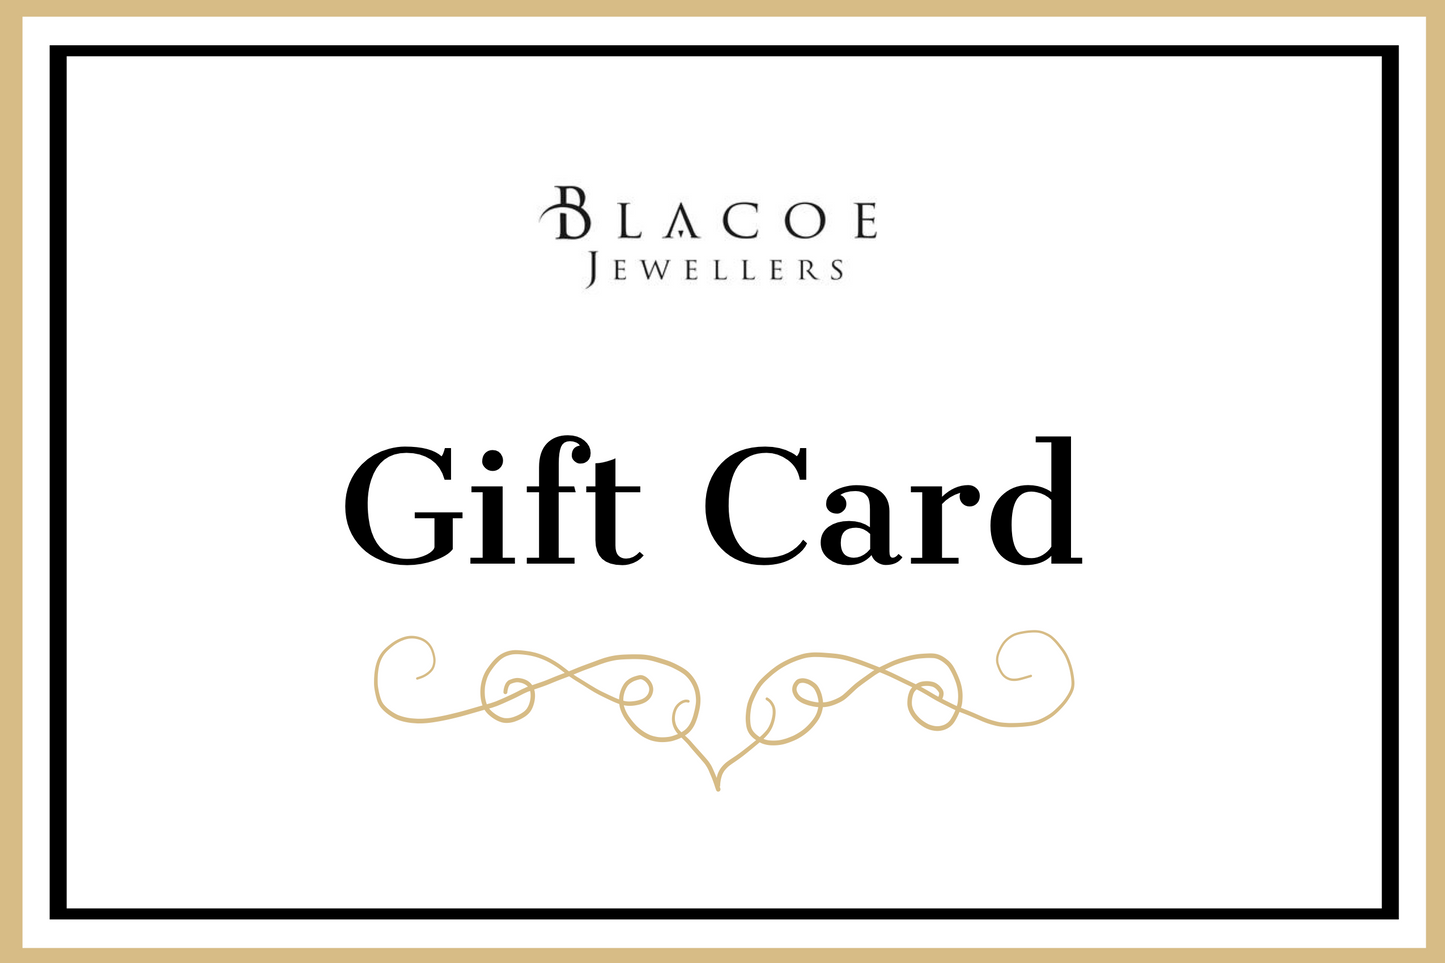 Blacoe Jewellers Gift Card